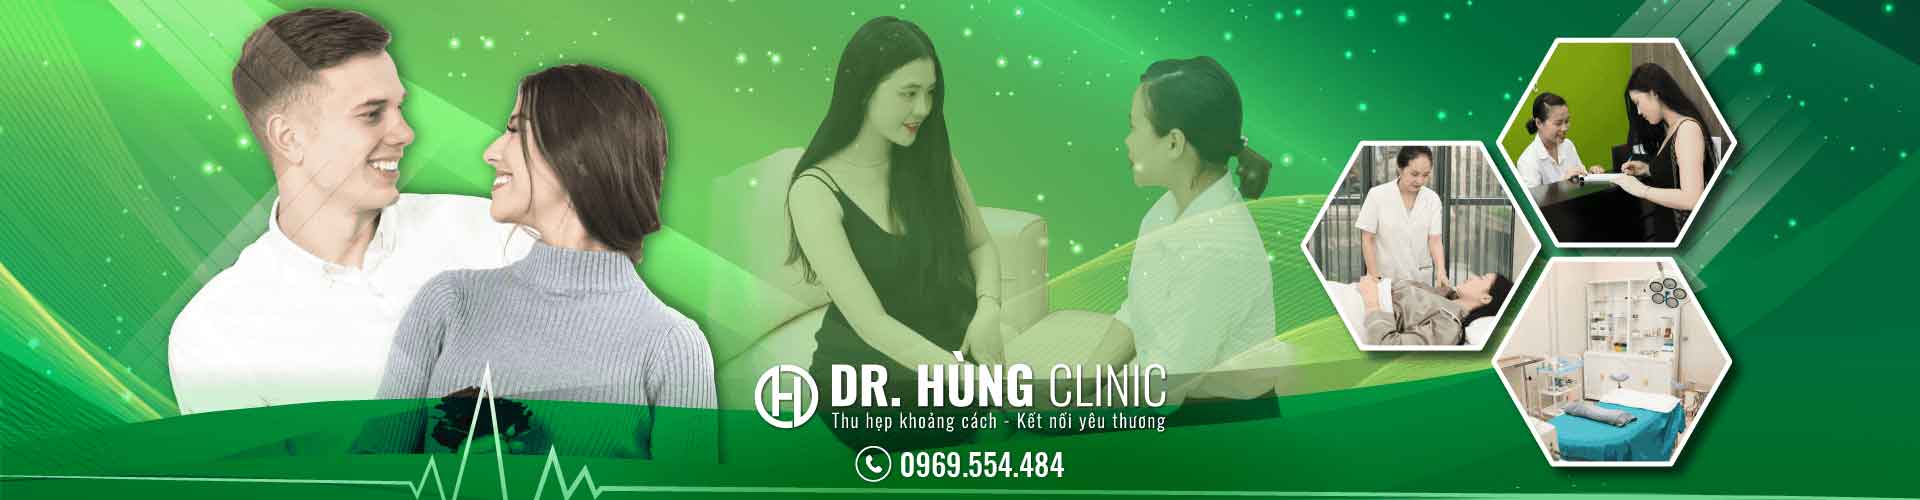 Dr Hùng Clinic là phòng khám uy tín về phụ khoa, nam khoa tại Hà Nội